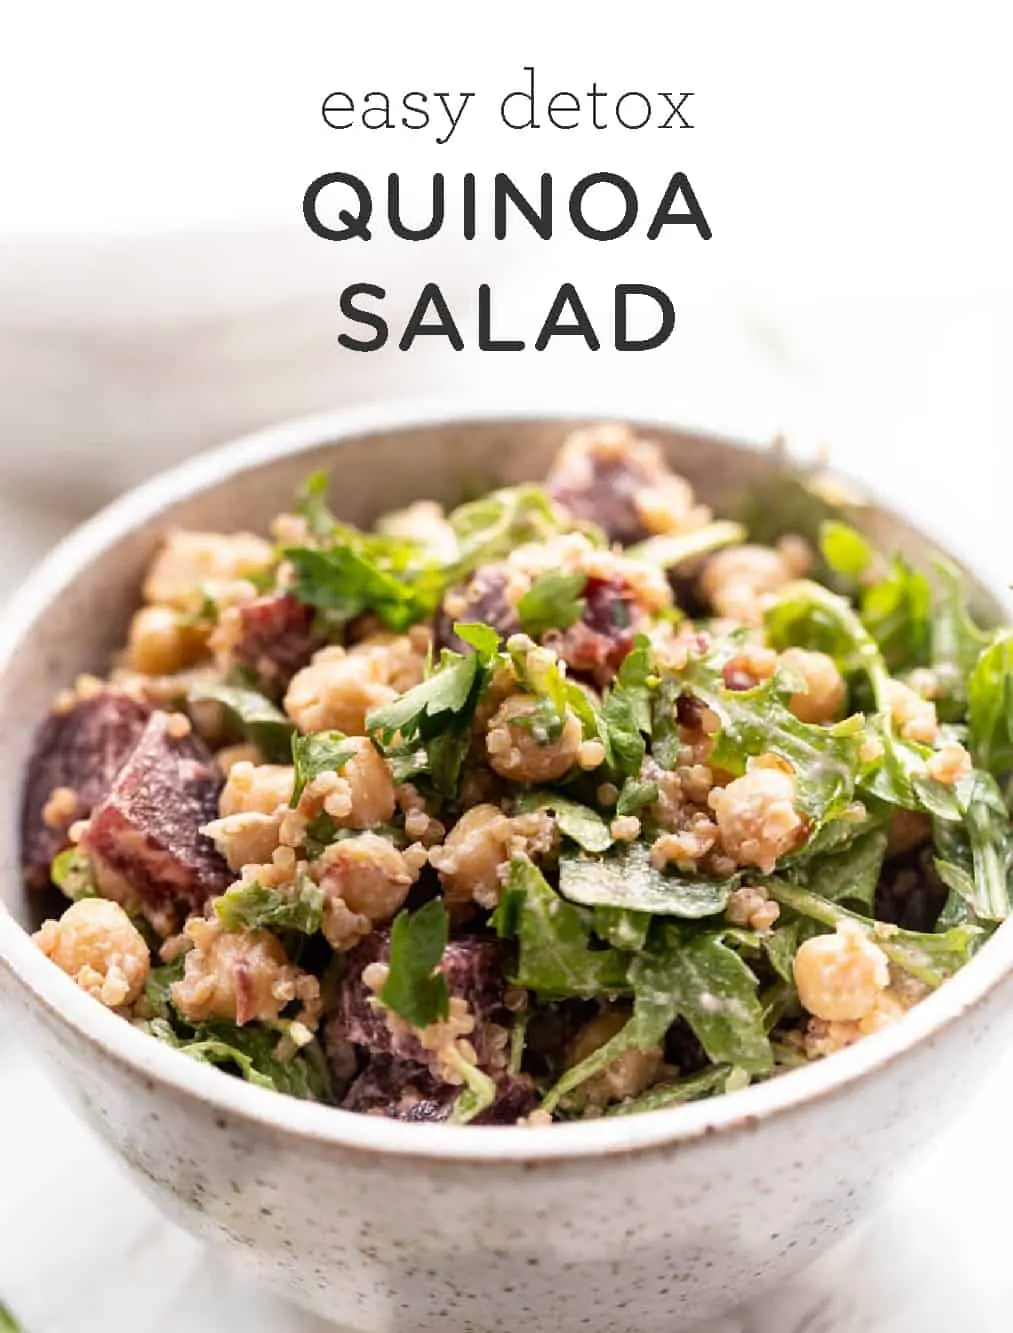 Healthy Detox Quinoa Salad